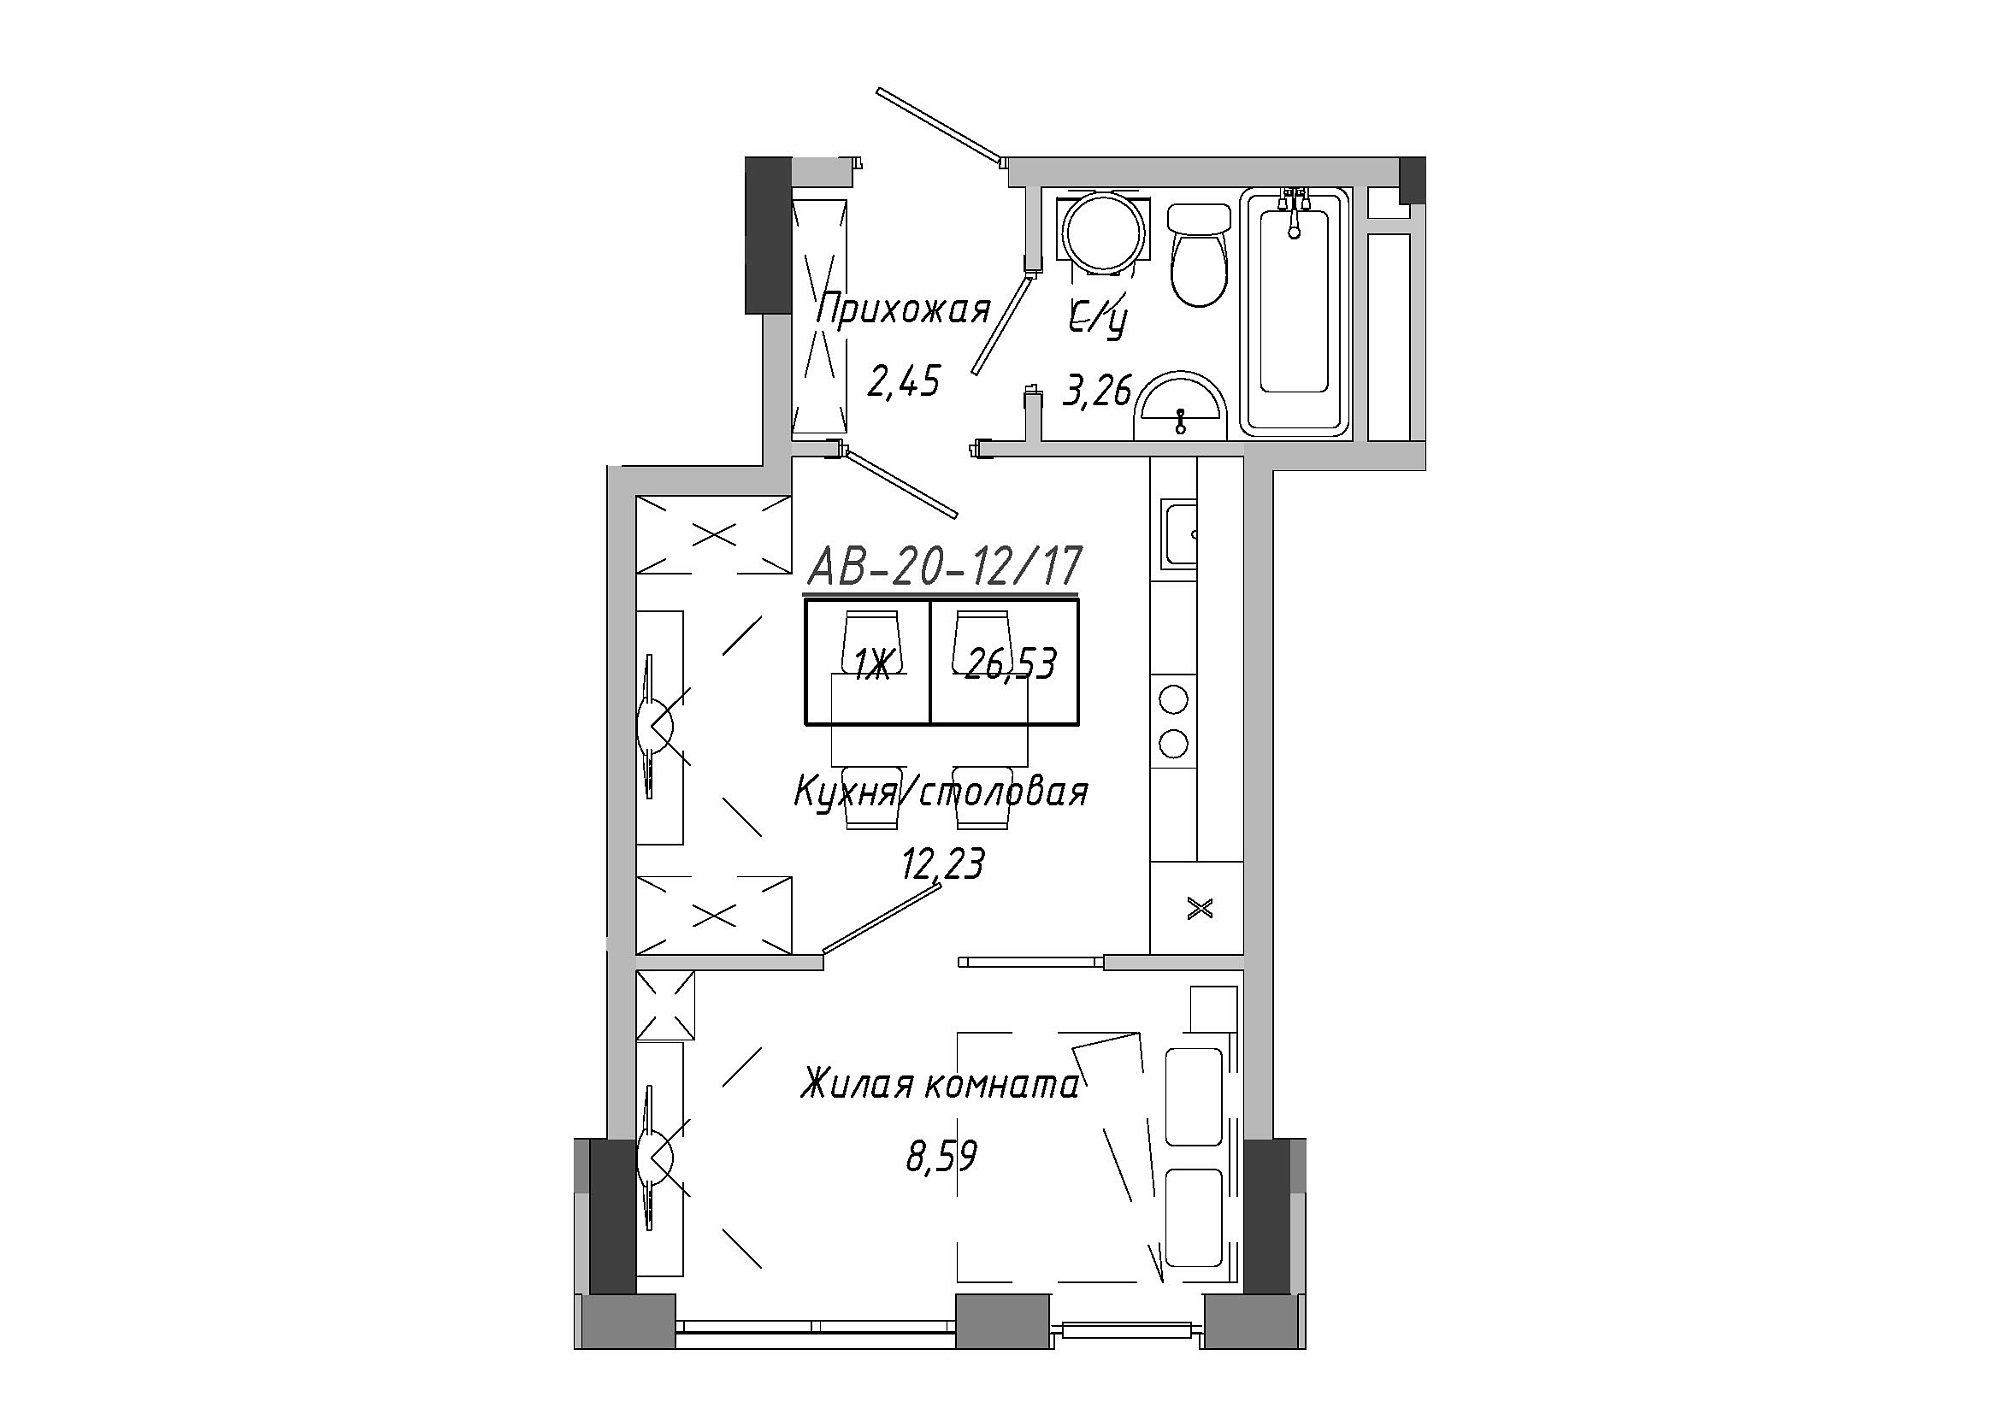 Планировка 1-к квартира площей 26.98м2, AB-20-12/00017.